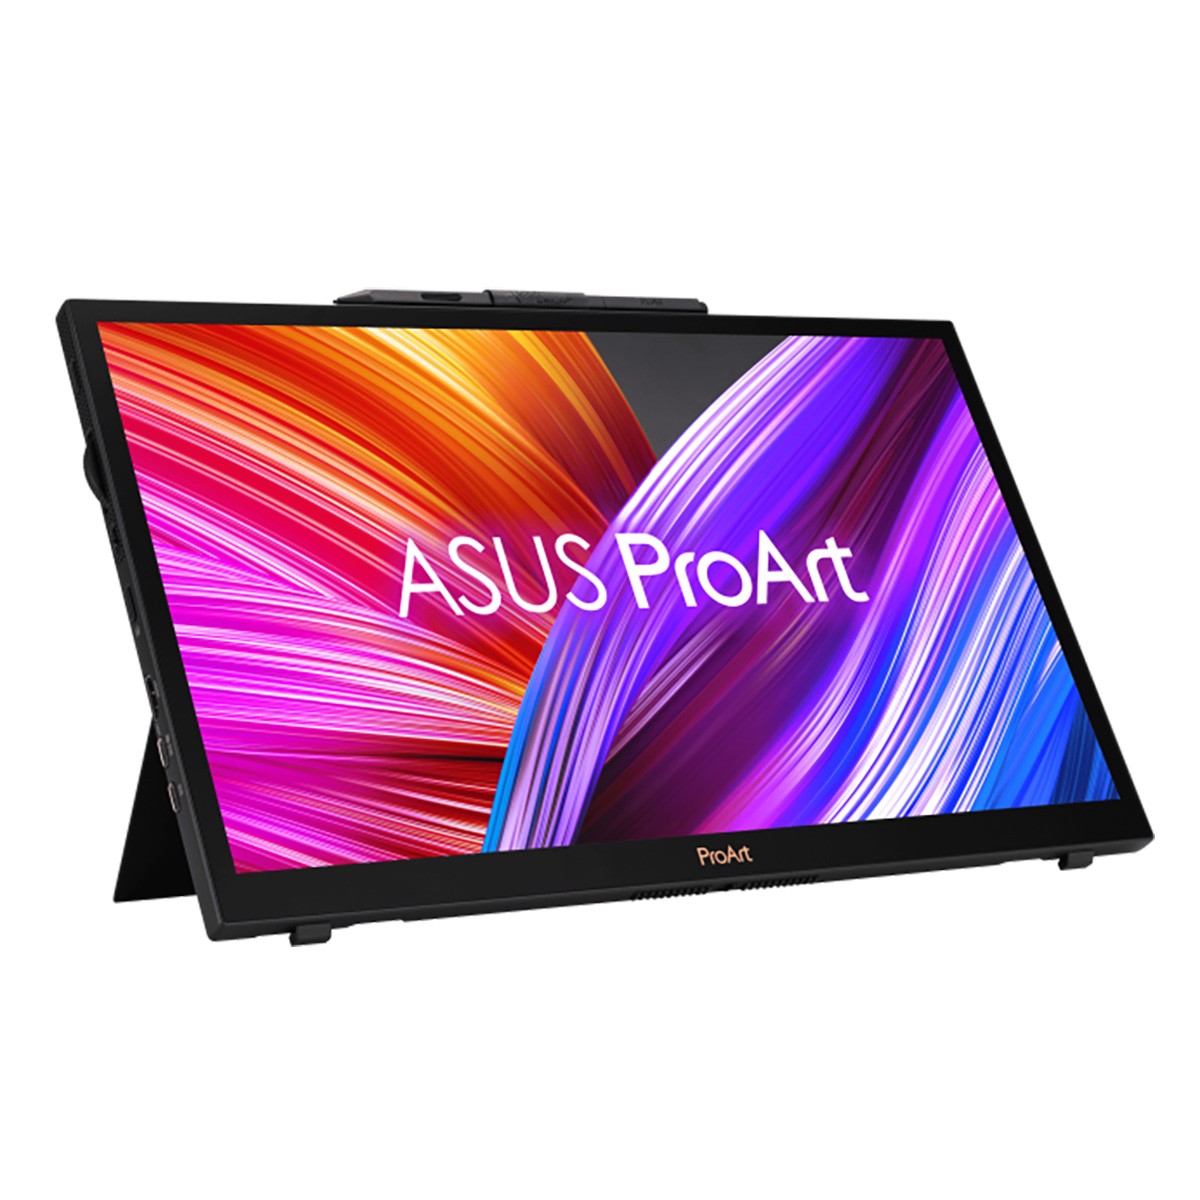 Sortez les loupes, ASUS lance son Pro Art PA169CDV, un écran de 15,6 pouces en UHD.